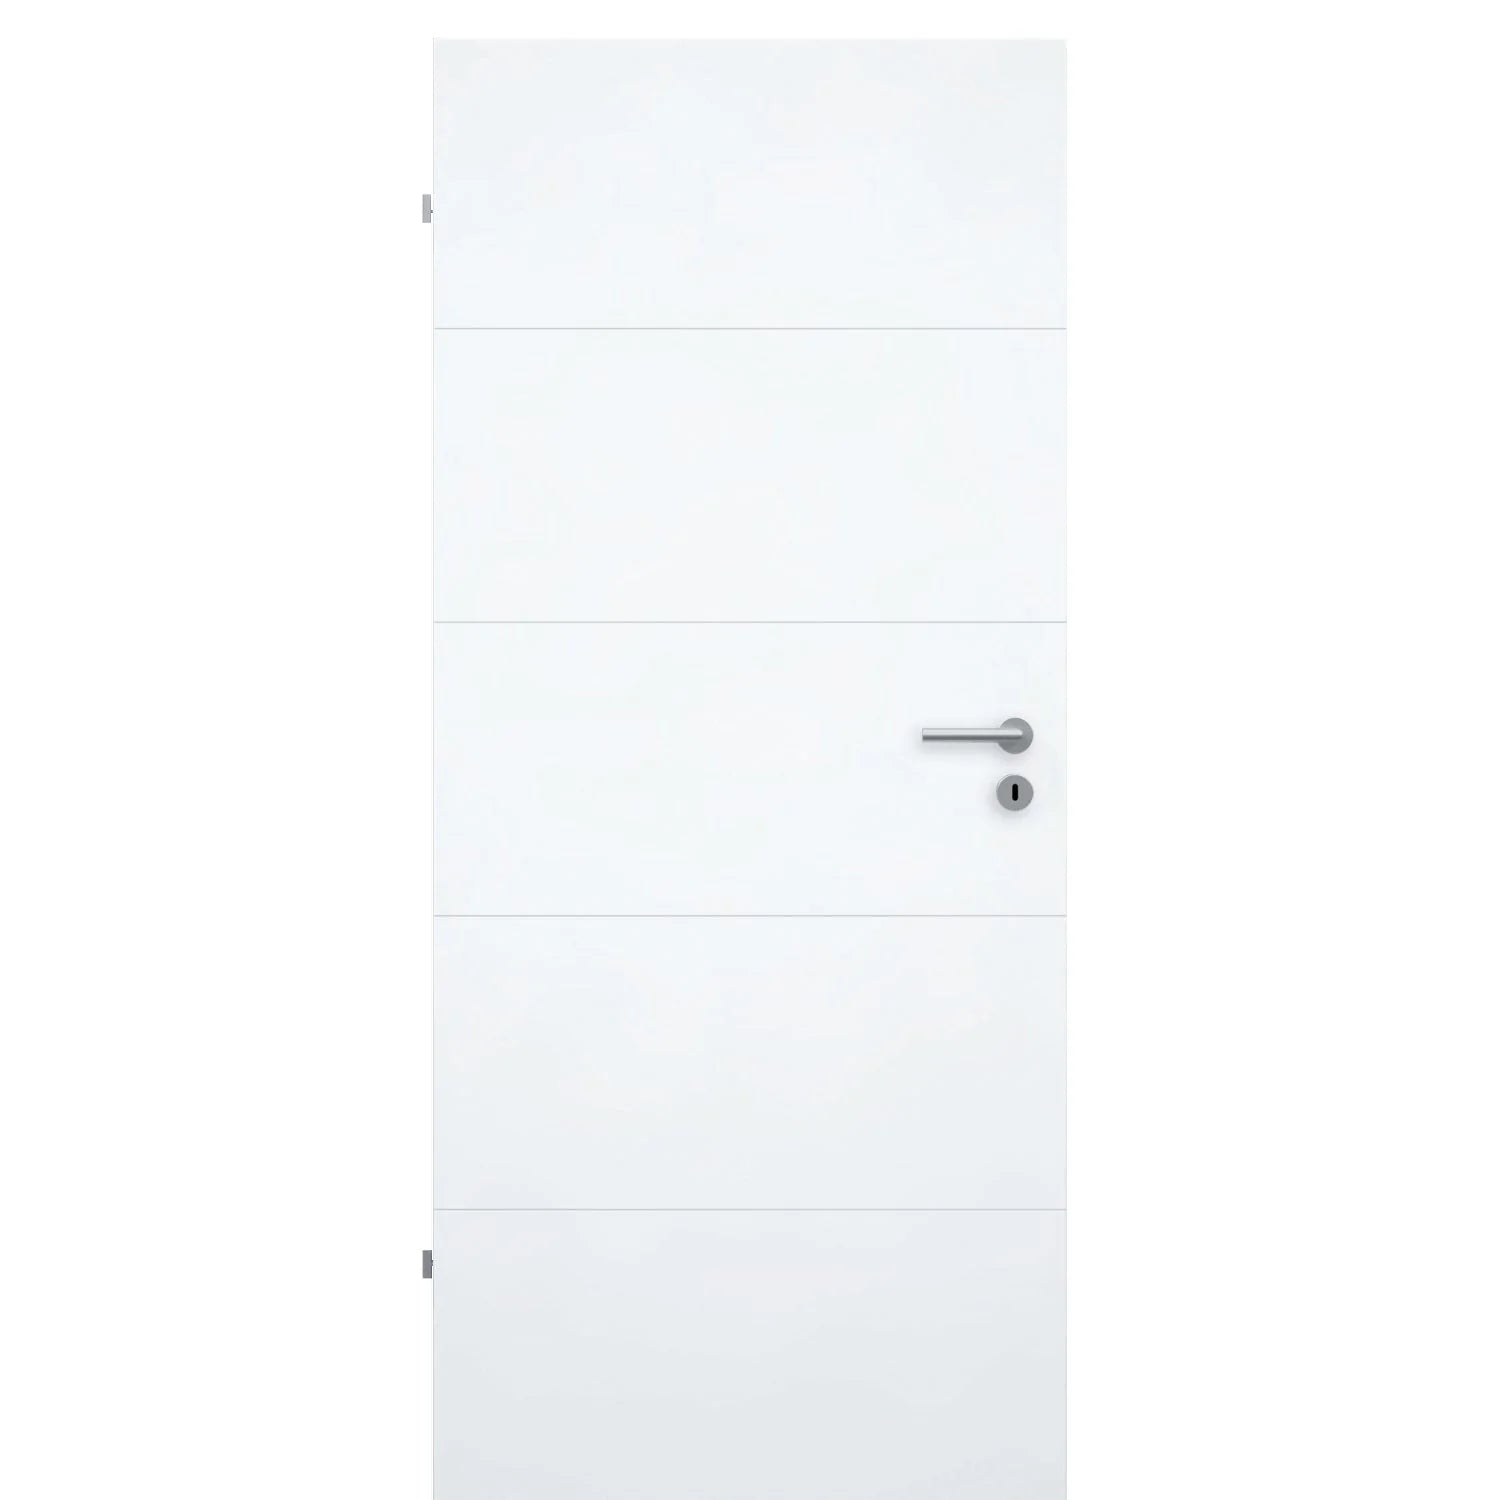 Zimmertür brillant-weiß modern mit 4 Rillen Designkante - Modell Designtür Q43